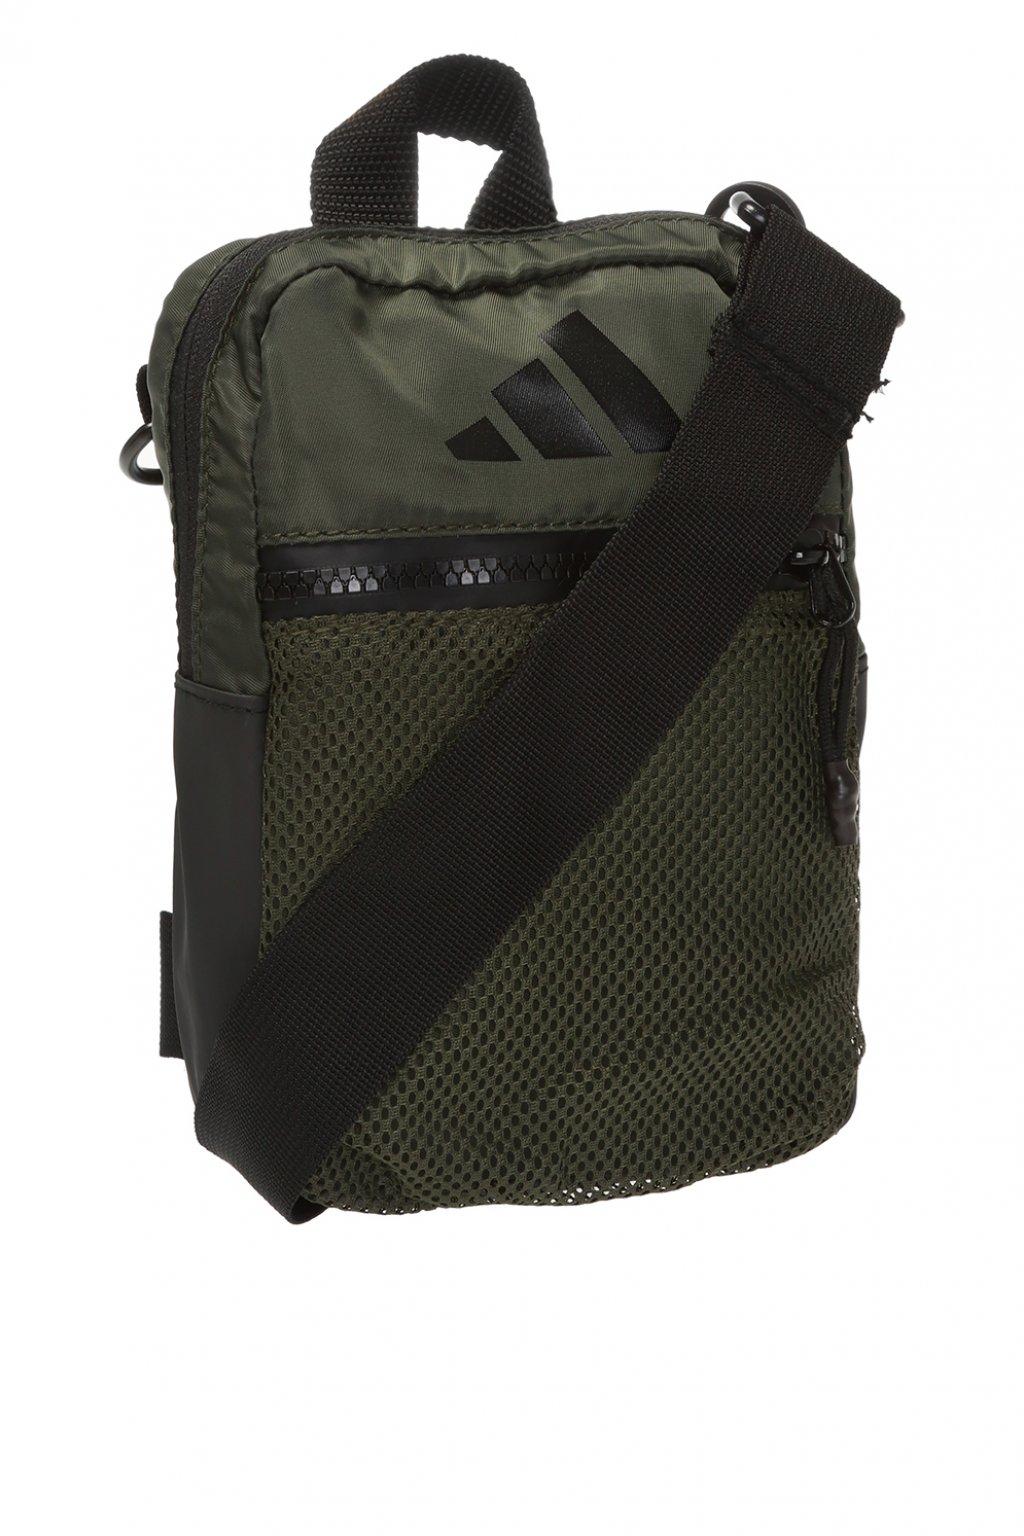 adidas Originals Synthetic Branded Shoulder Bag in Green for Men - Lyst